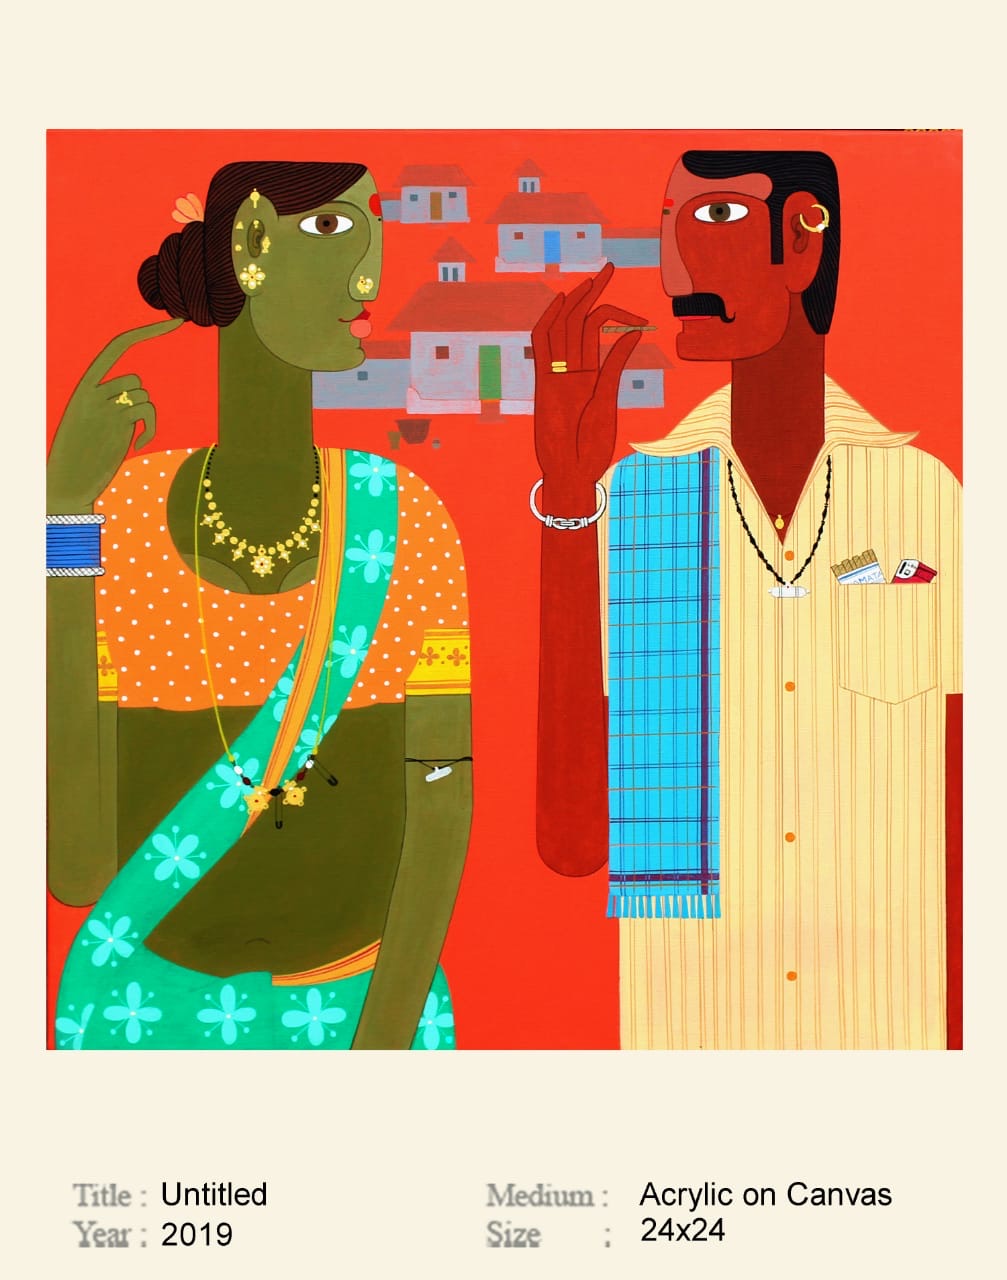 COUPLE IN CONVERSATION by Kandi Narsimlu | Acrylic art - Canvas wall decor